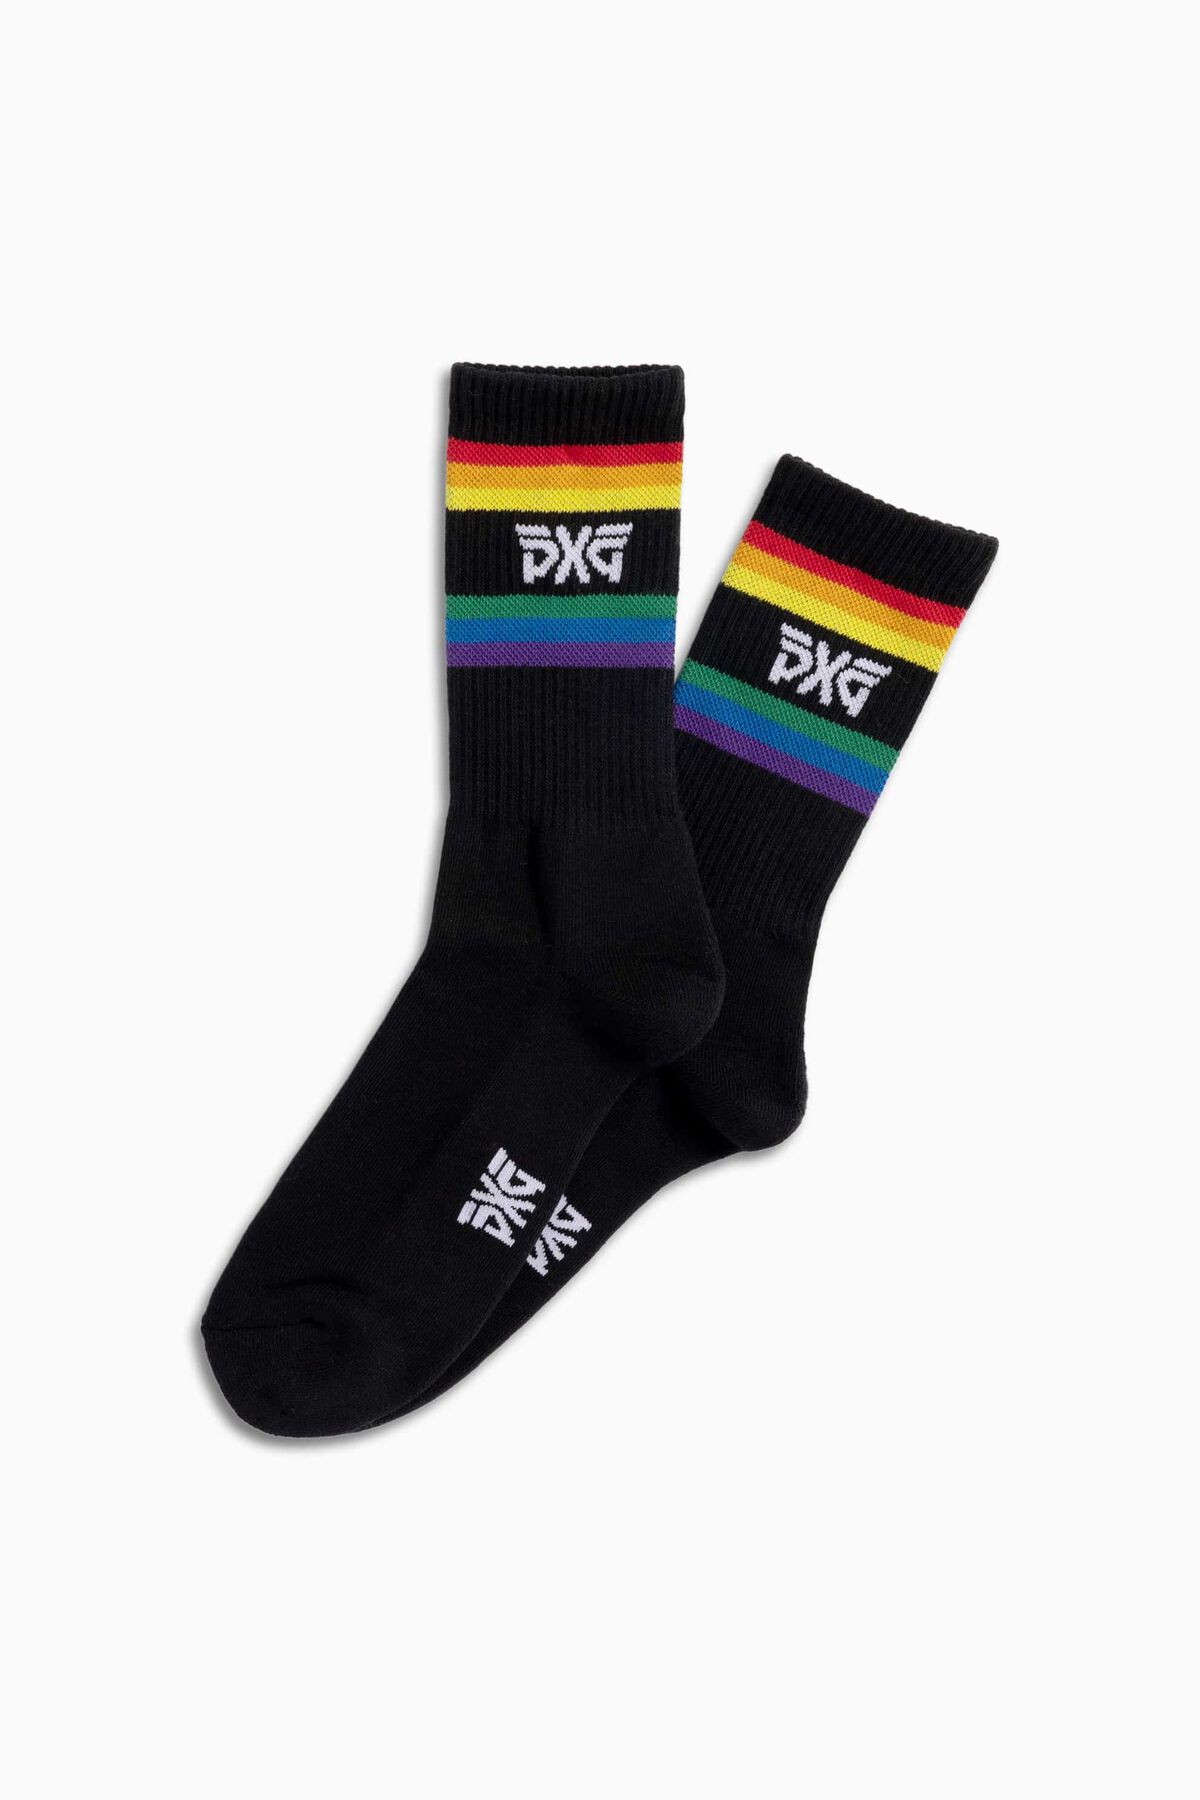 Buy Men\'s Pride Crew Socks | PXG